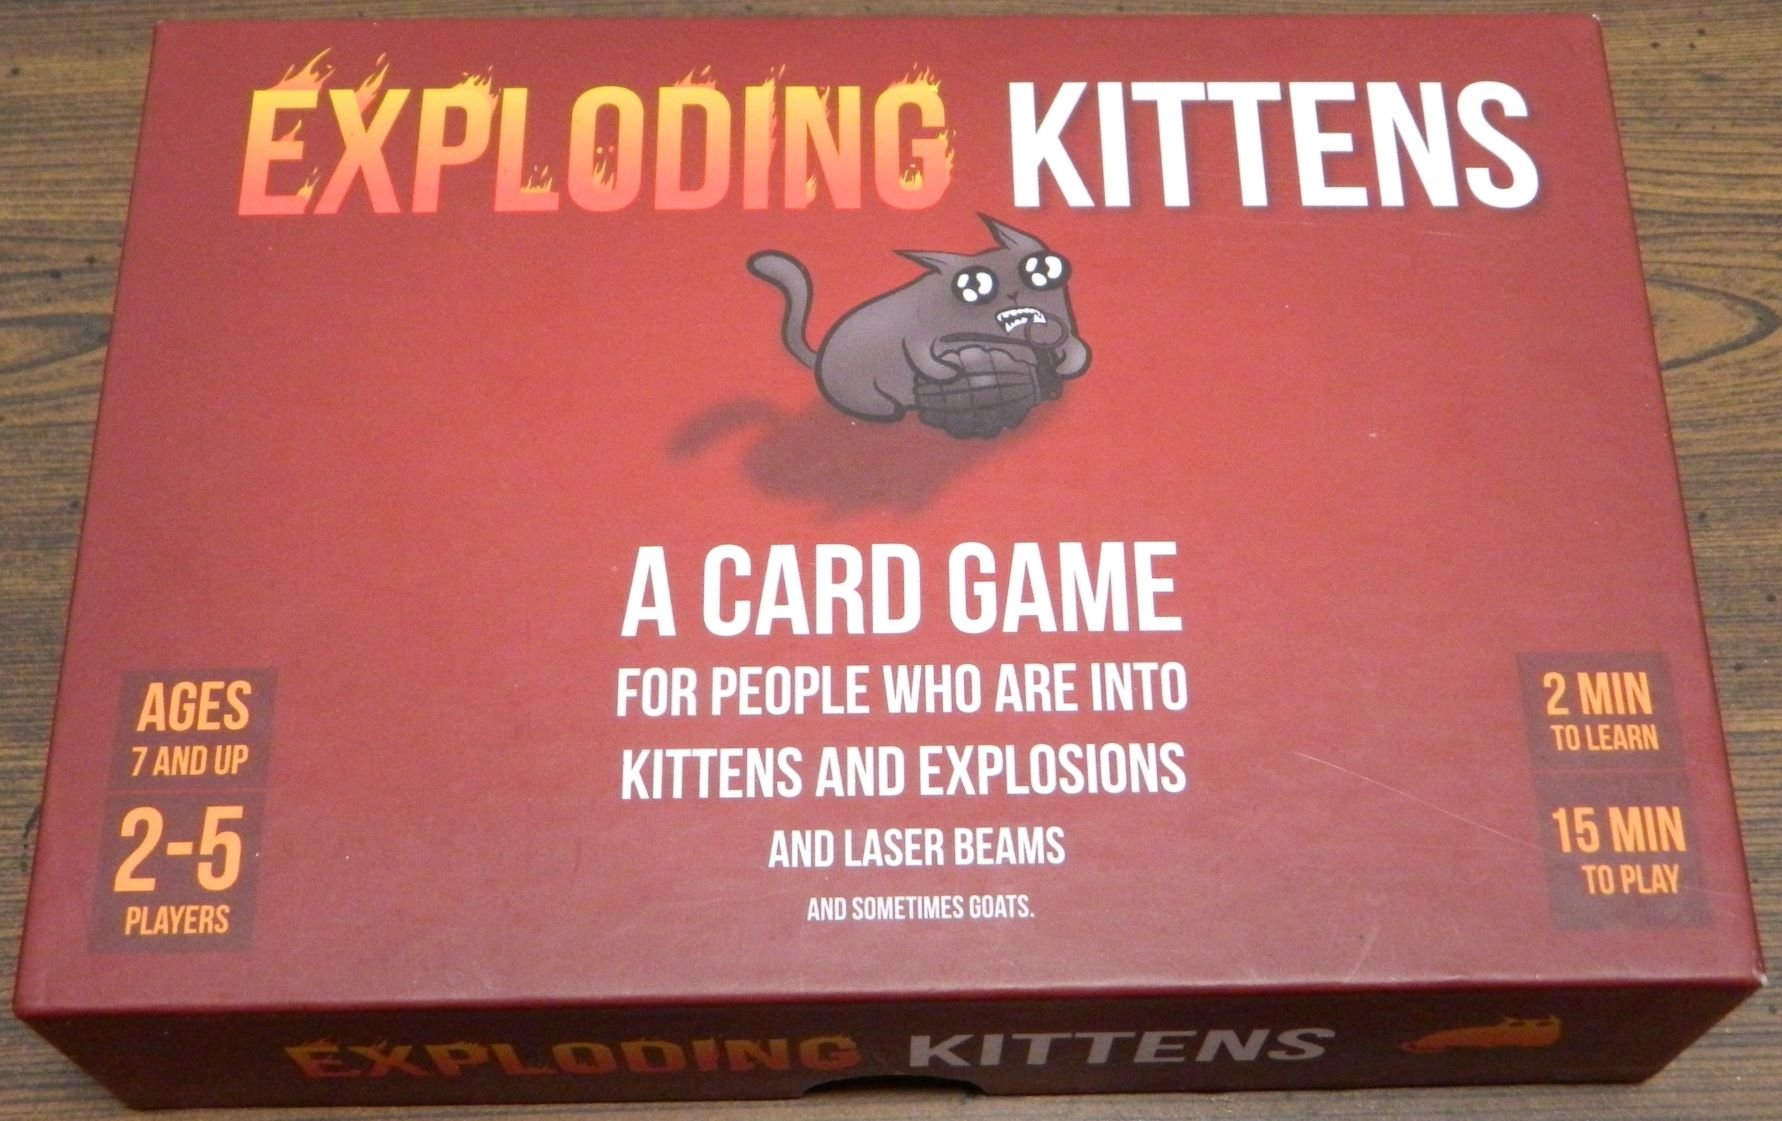 Box for Exploding Kittens